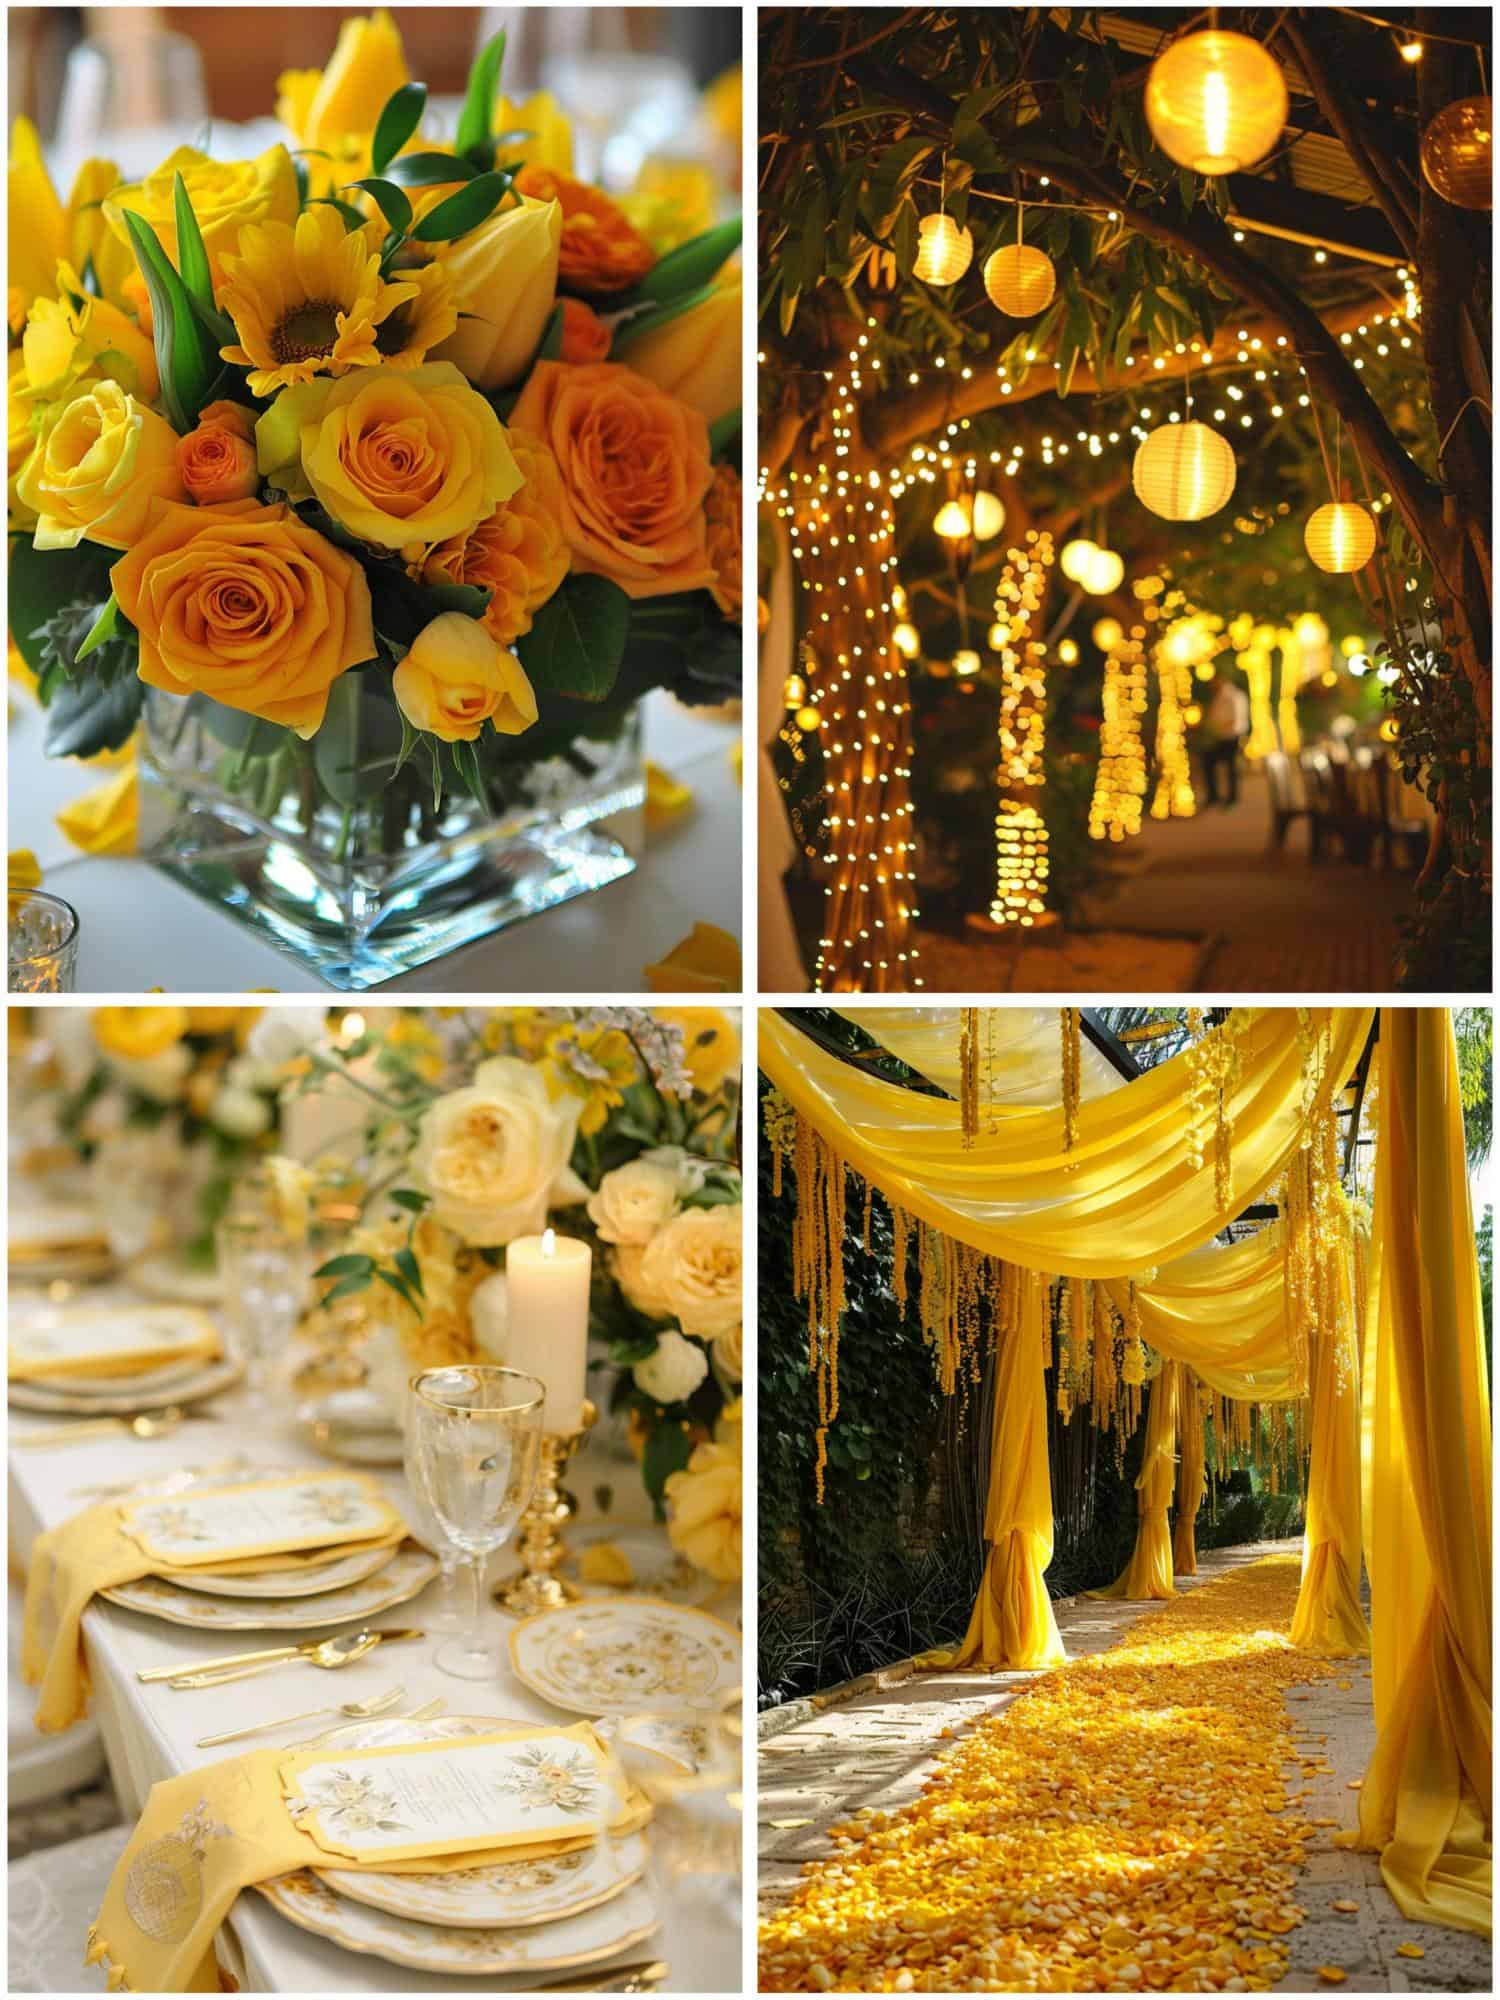 yellow wedding theme ideas for decor